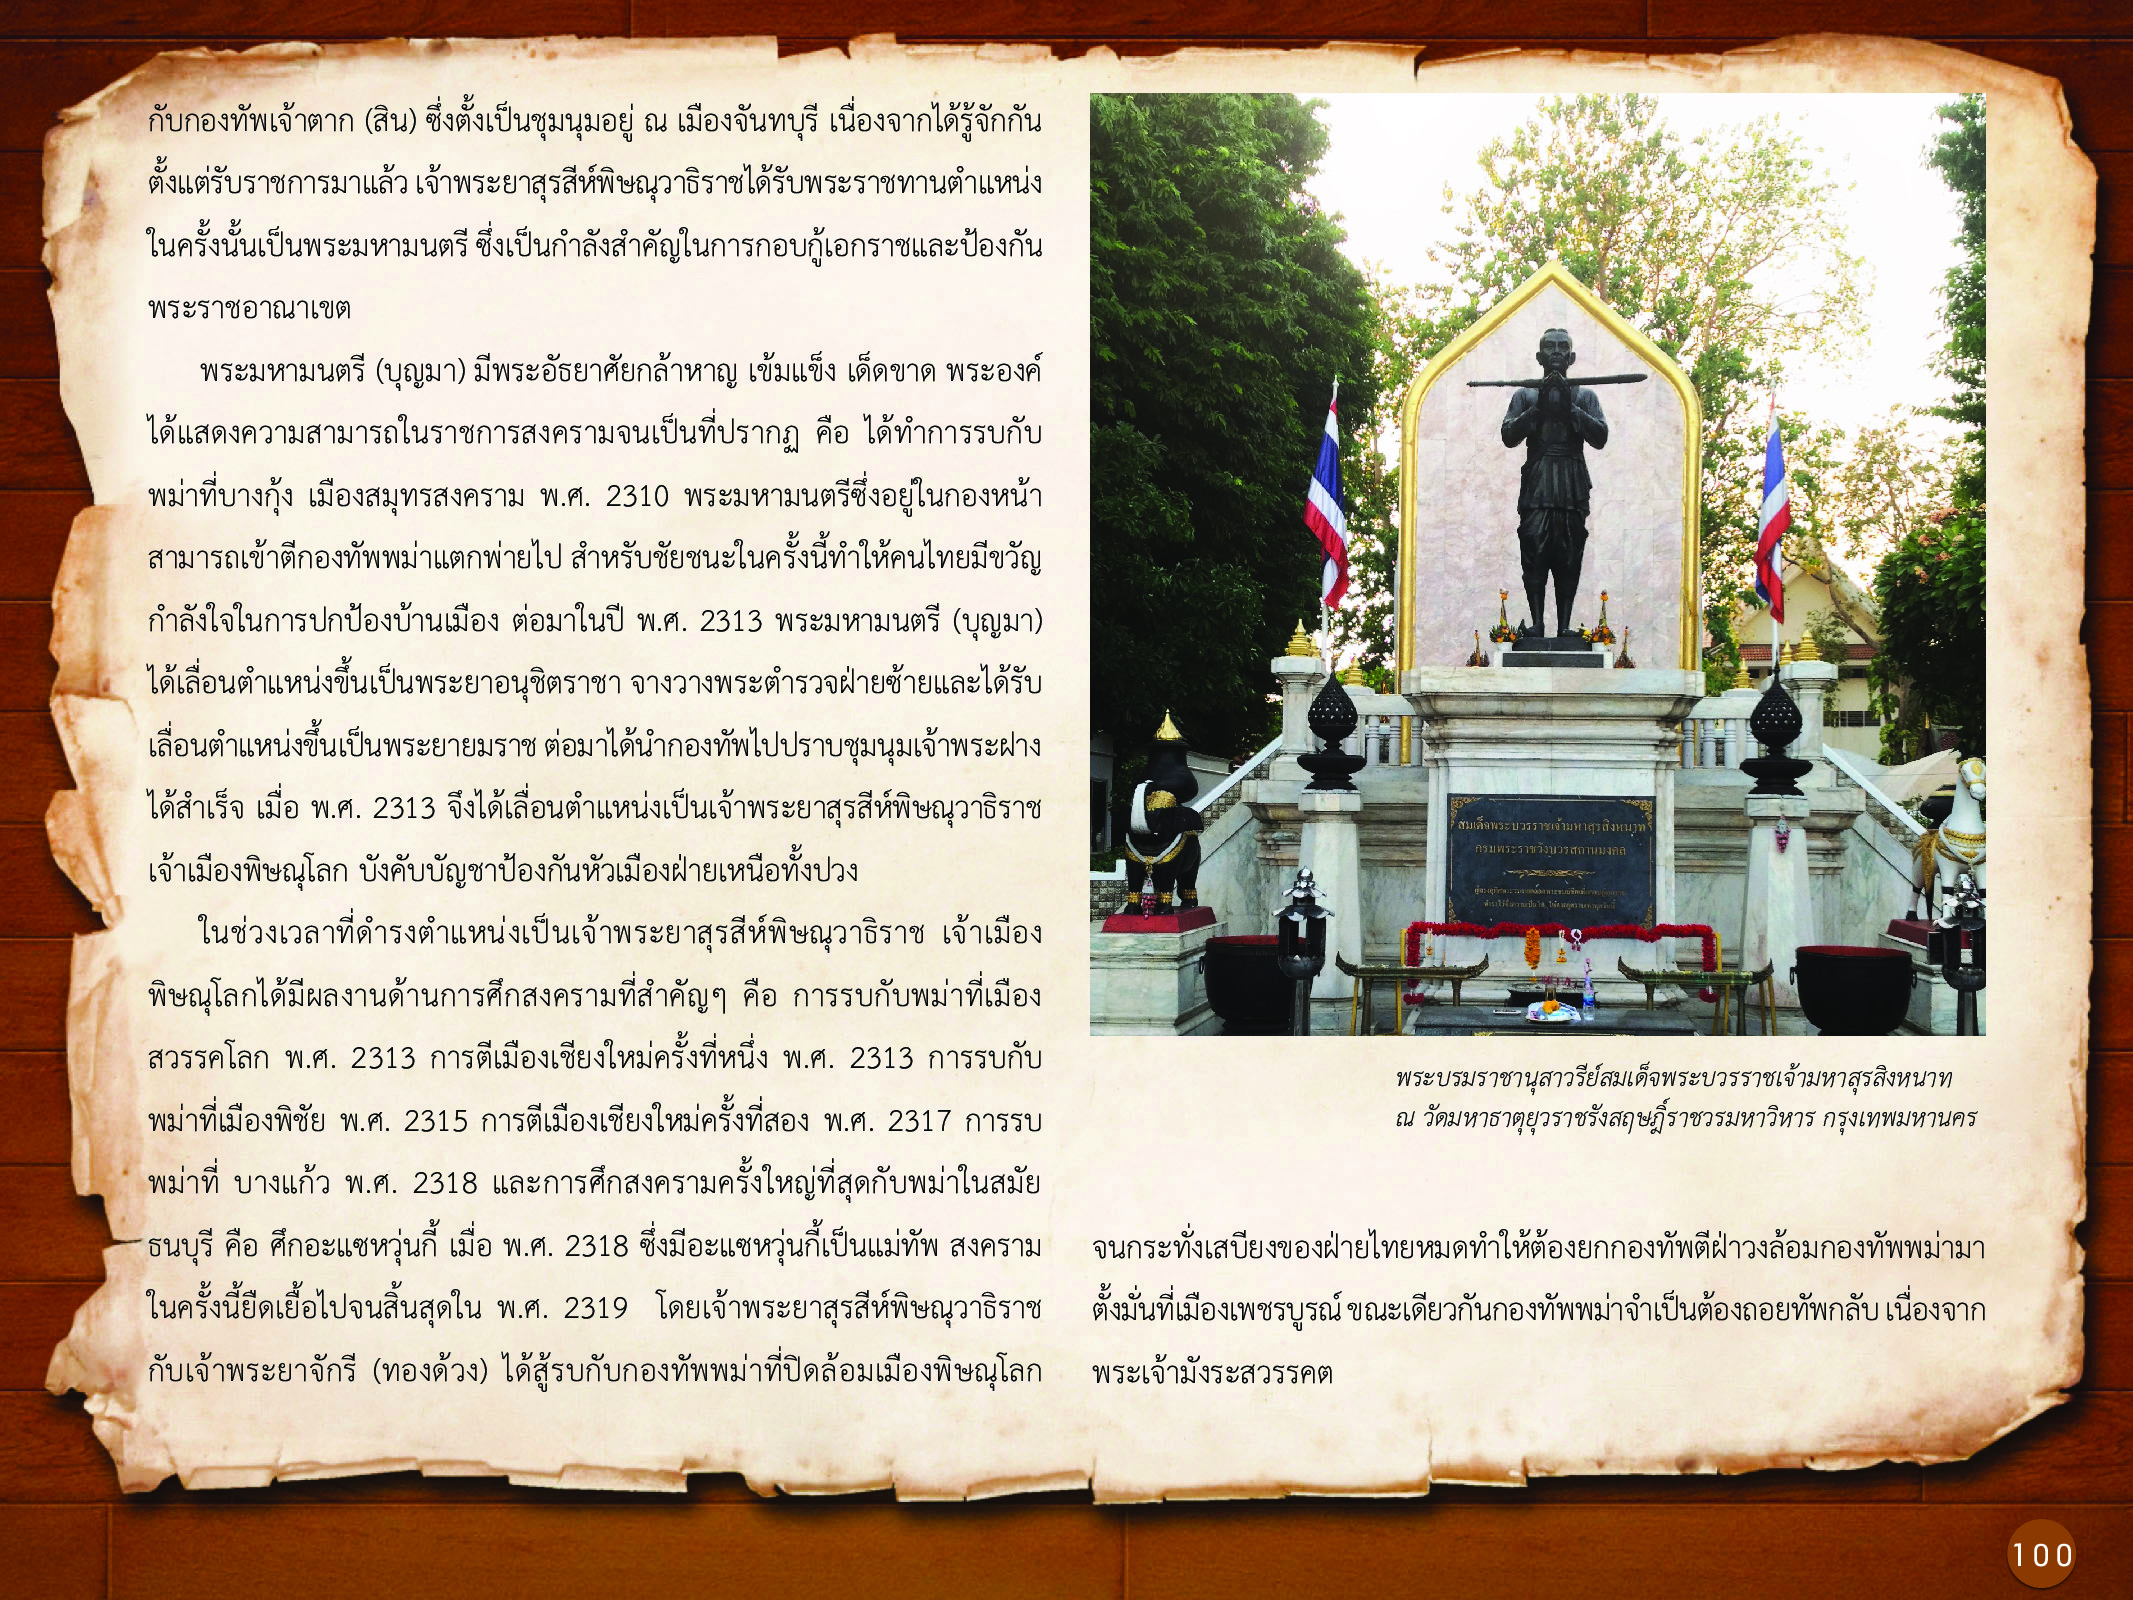 ประวัติศาสตร์กรุงธนบุรี ./images/history_dhonburi/100.jpg